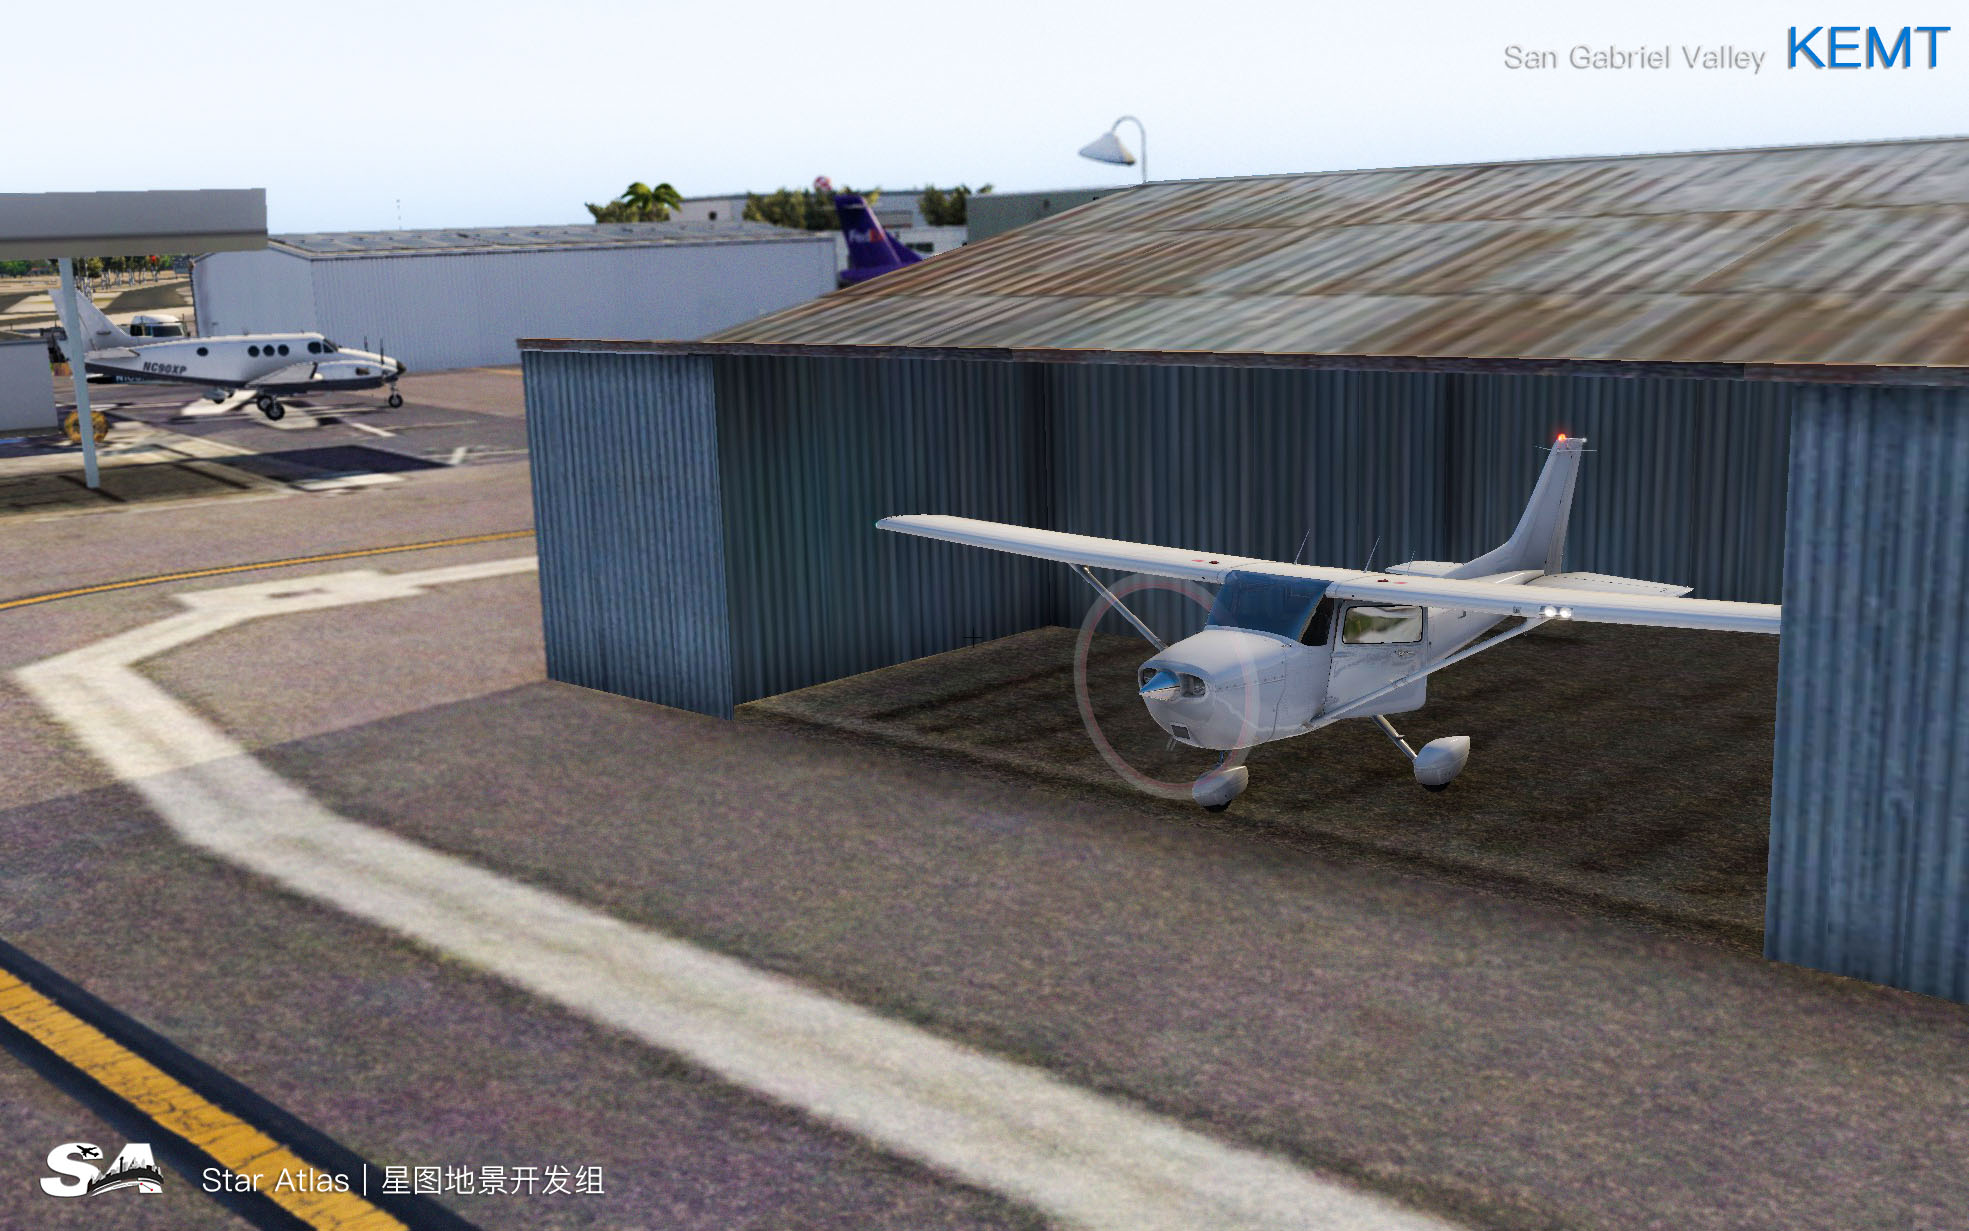 【X-Plane】KEMT-圣盖博谷机场 HD 1.0-7995 